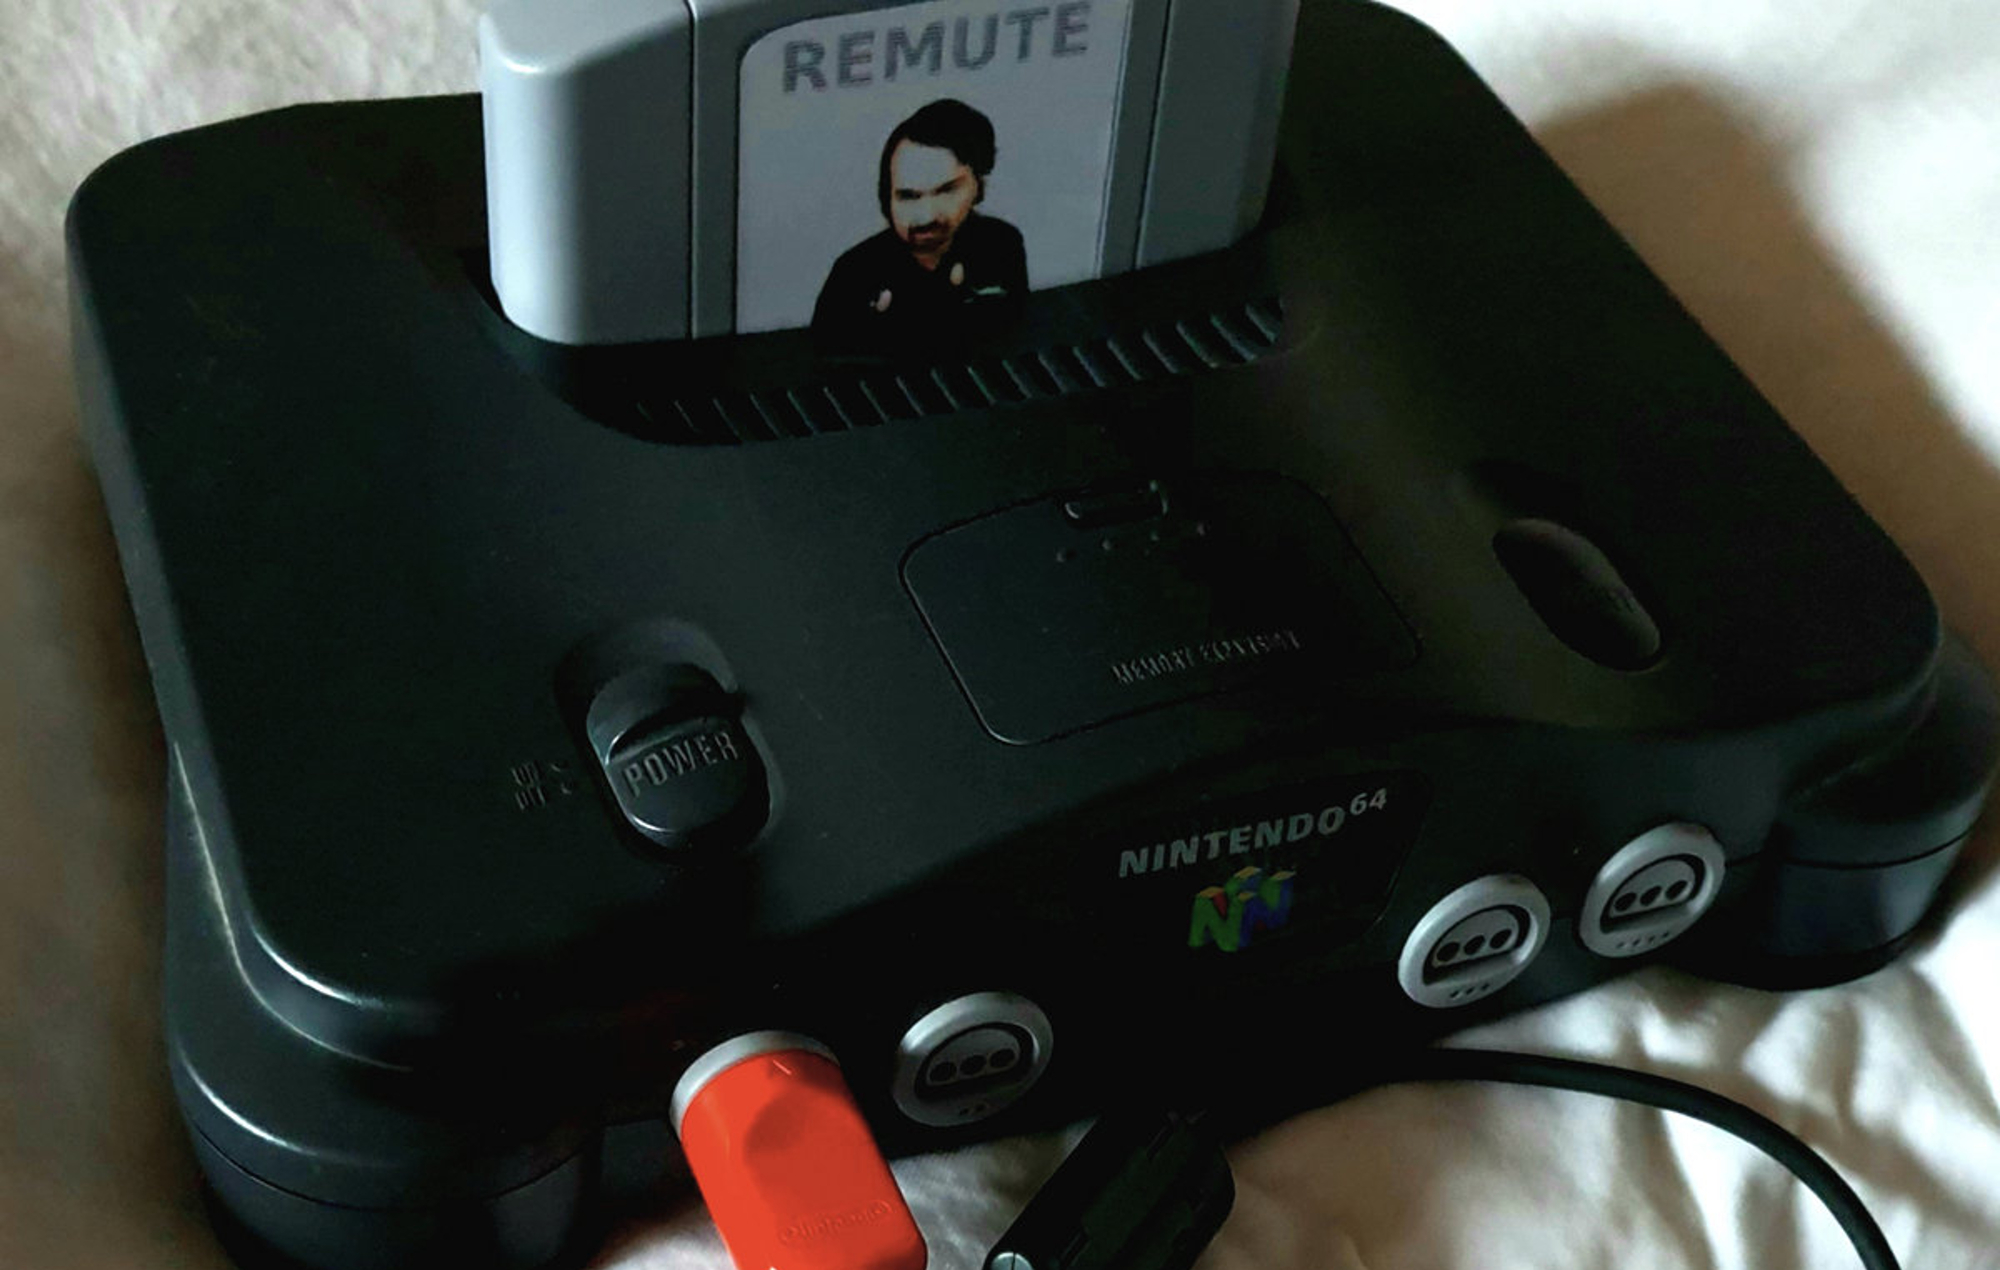 El DJ alemán Remute lanzará su próximo álbum en forma de cartucho de Nintendo 64